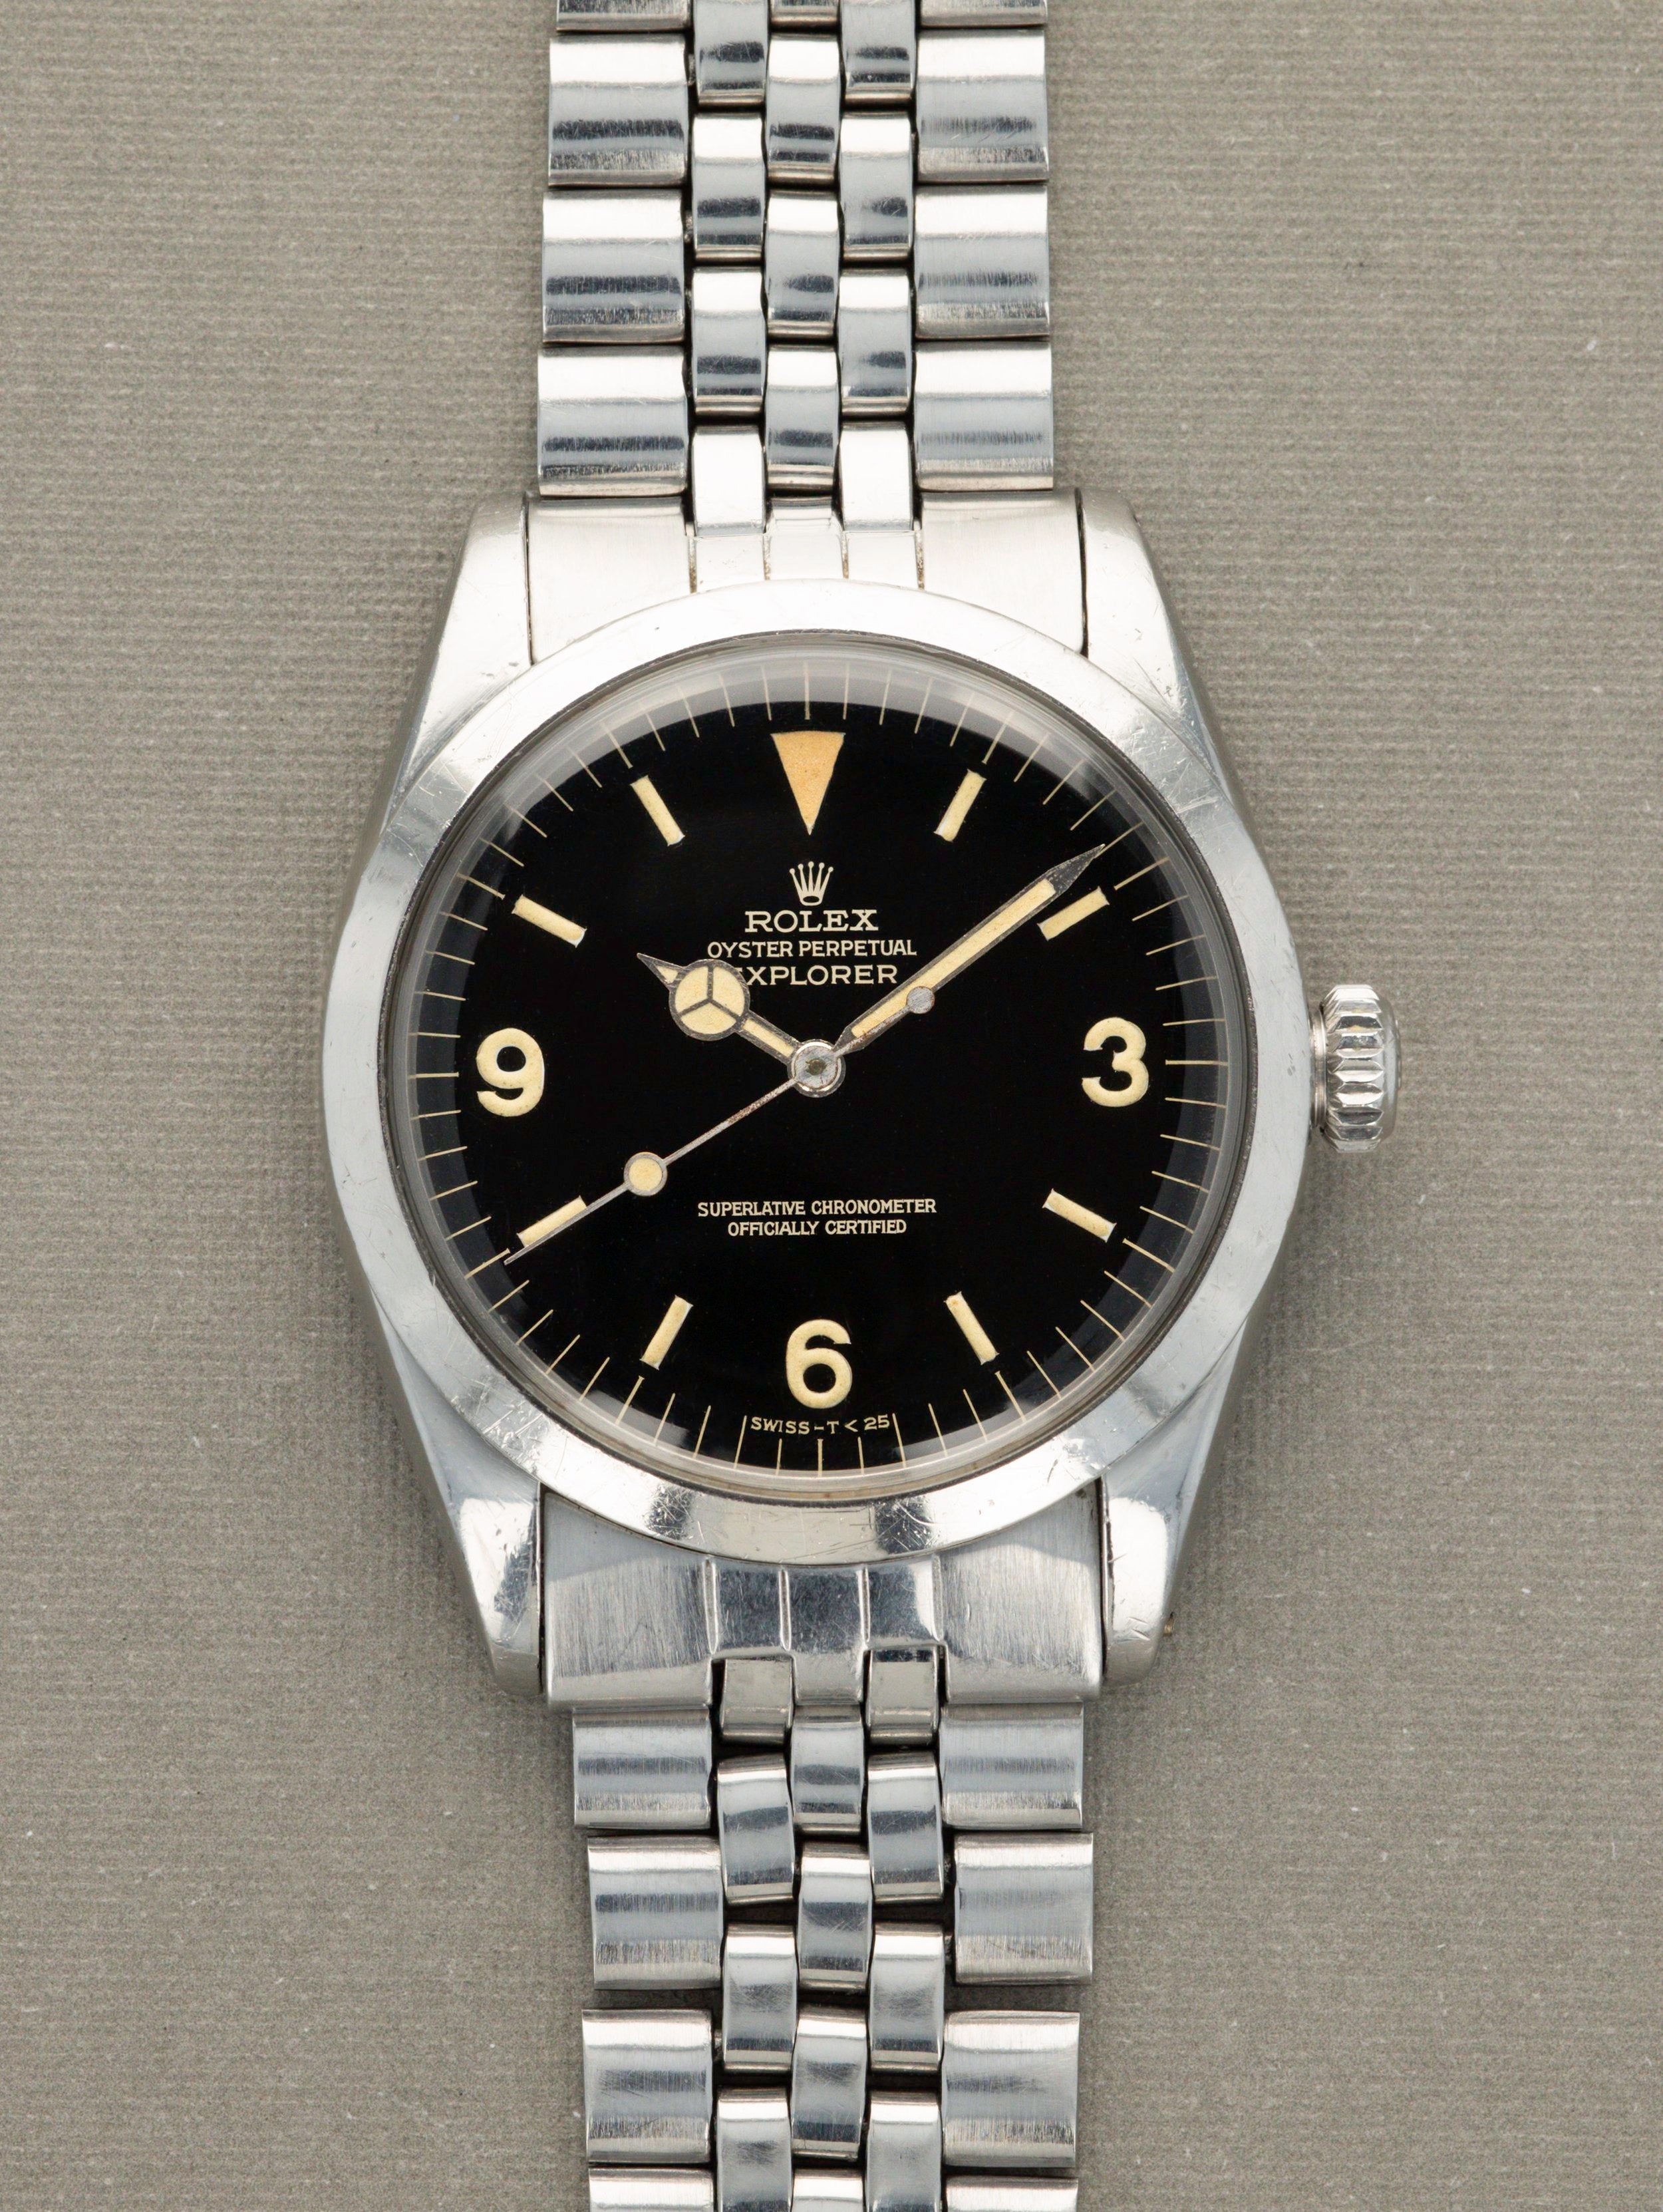 1987 Rolex Explorer I Ref 1016 Watch For Sale - Mens Vintage Time only